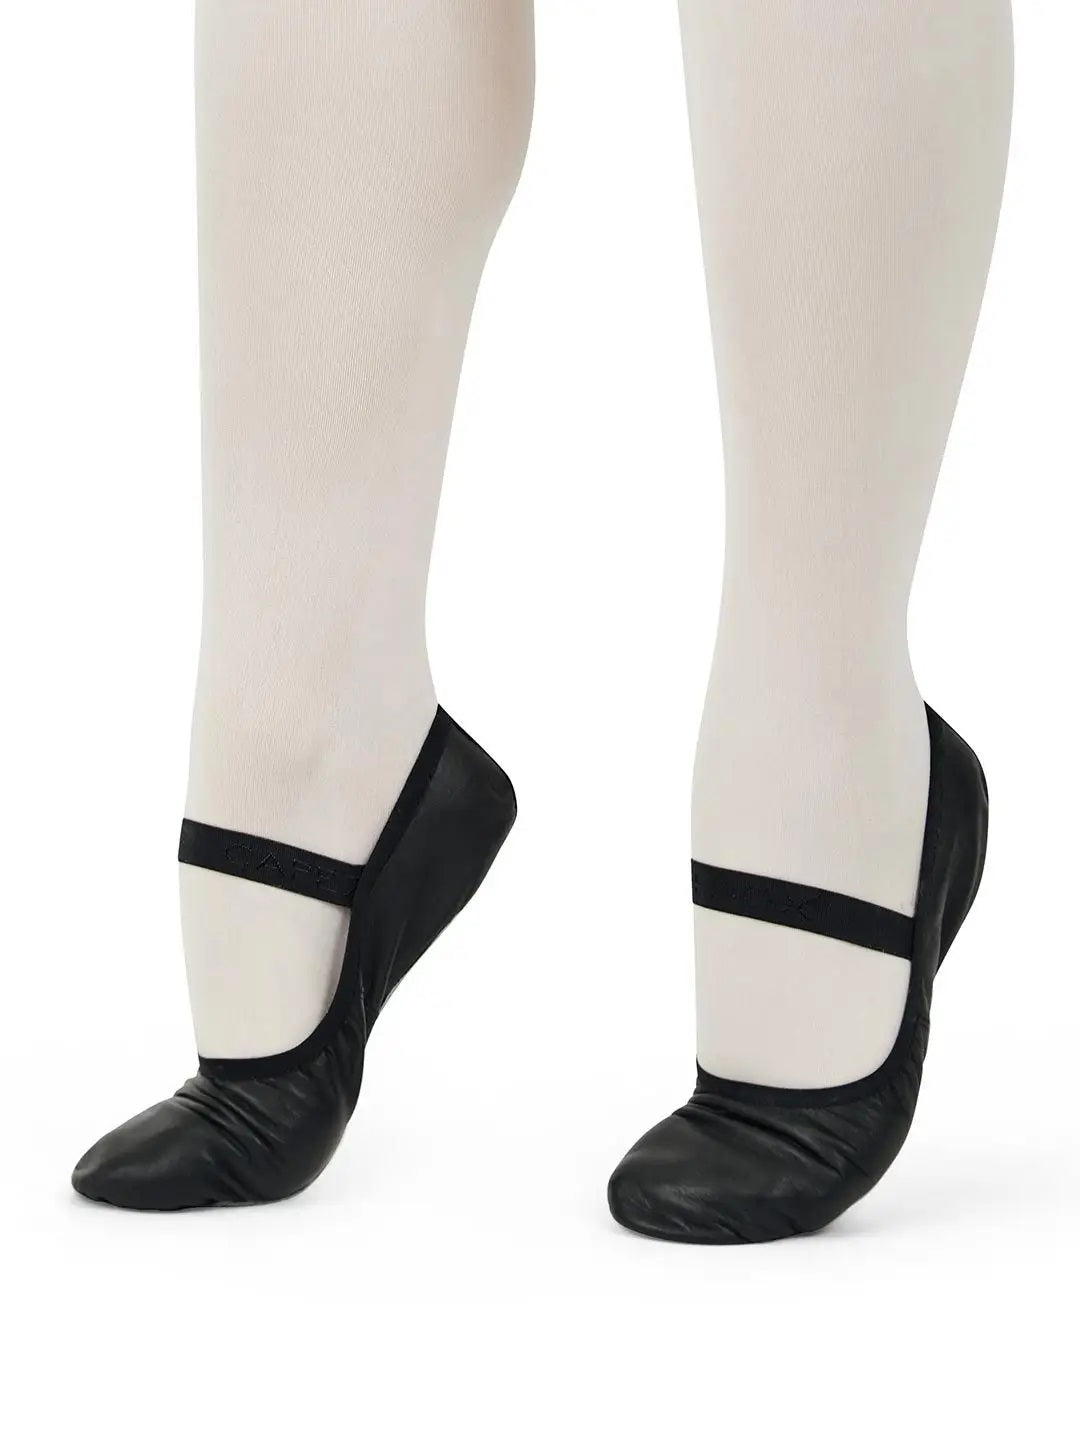 Lily Ballet Shoe - Black